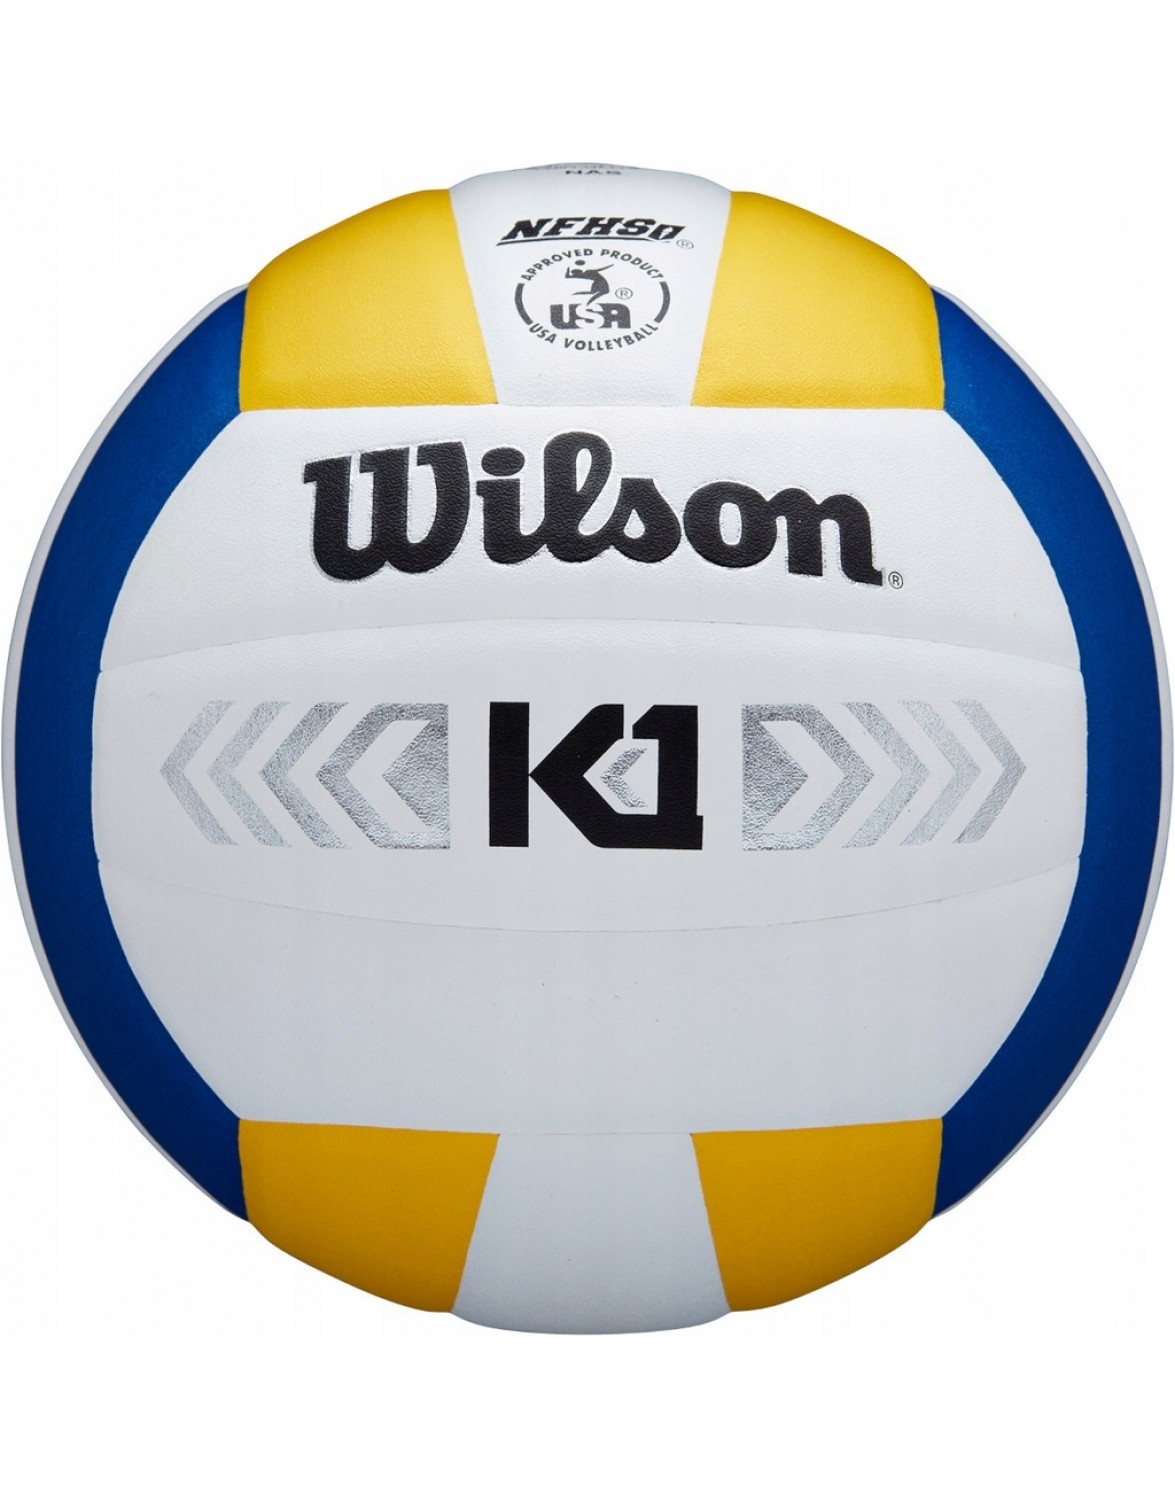 Волейбол Wilson K1 Silver Volleyball R. 5. WILSON K1 SILVER волейбольний м'яч